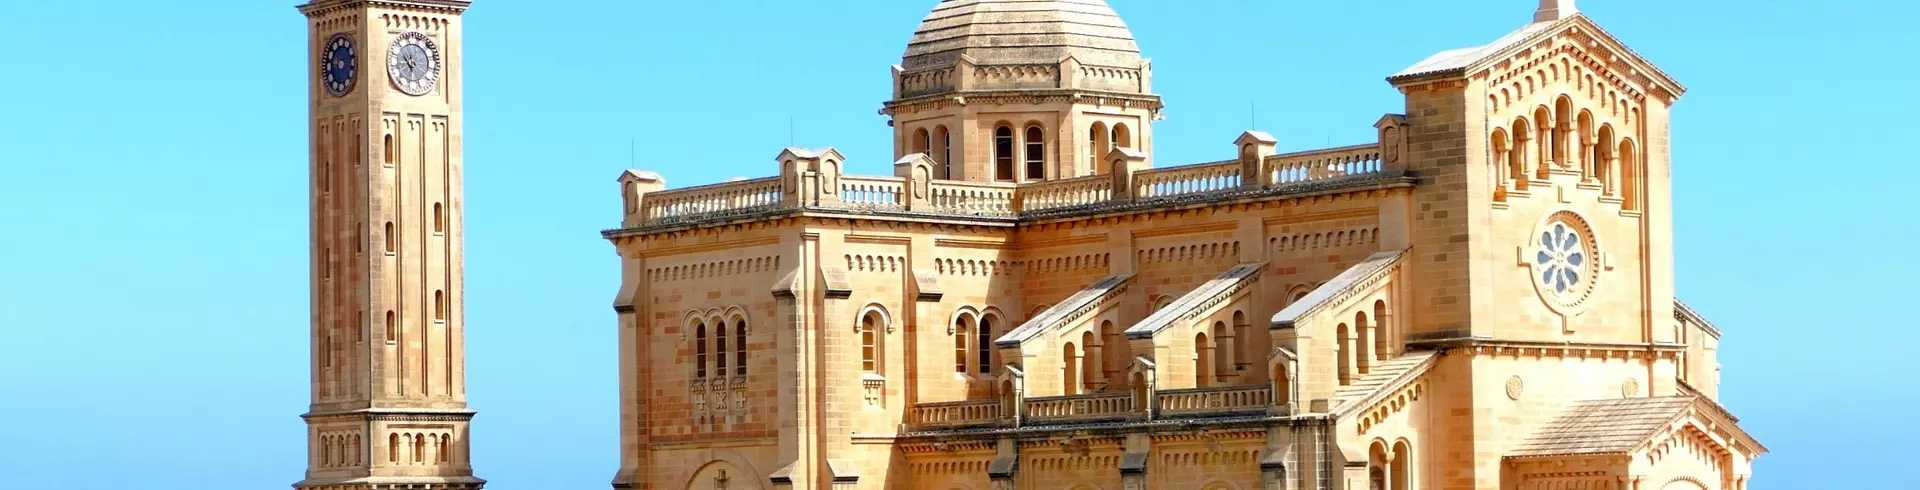 Malta śladami św. Pawła - 6 dni